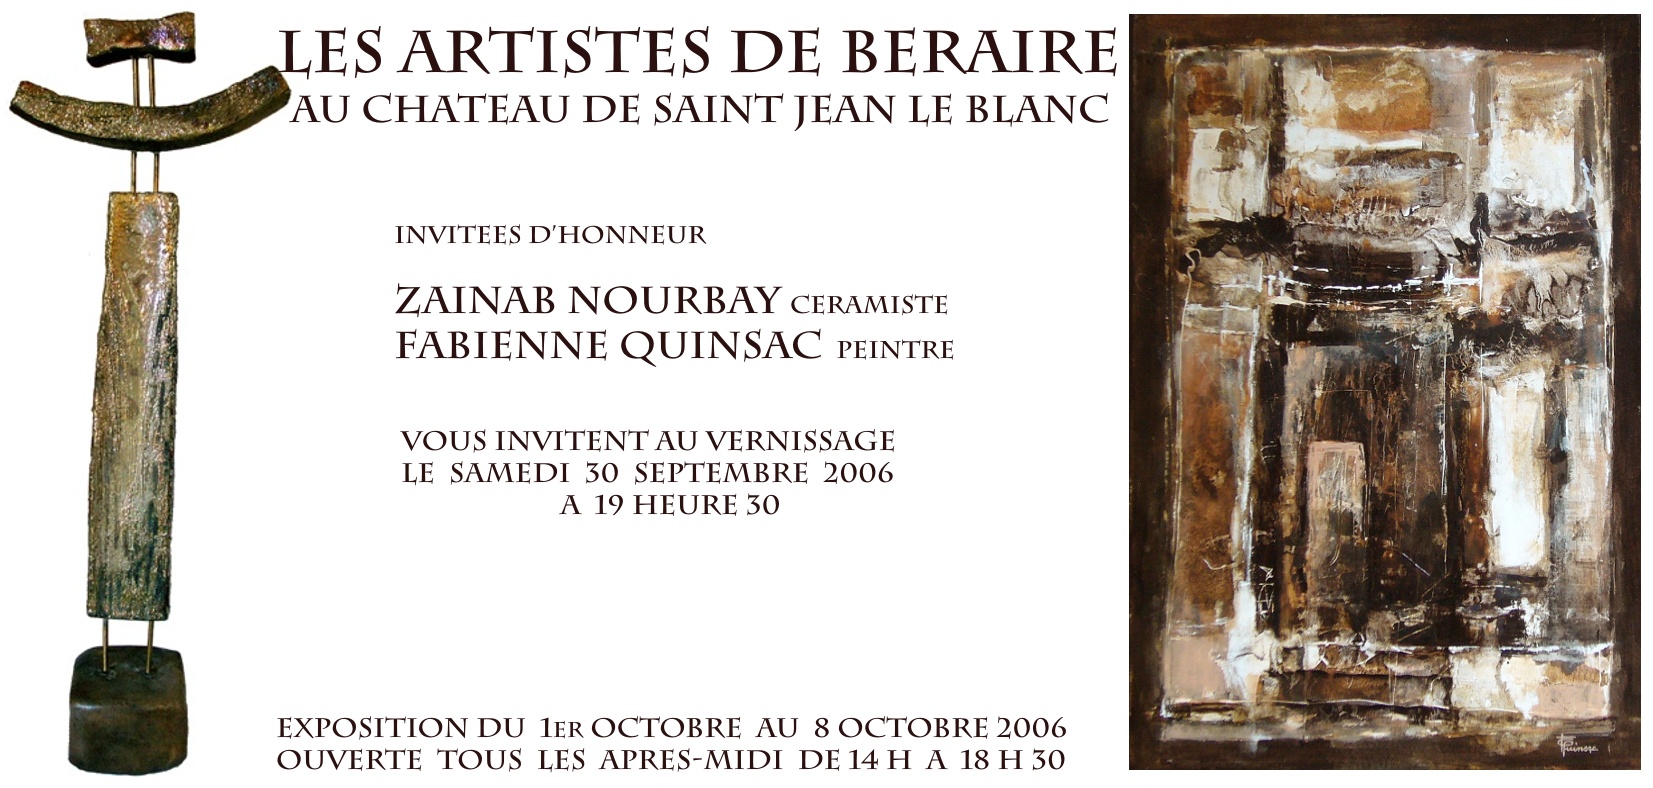 Fabienne Quinsac (peintre) & Zainab Nourbay (céramiste) invitées d'honneur de l'exposition des Artistes de Béraire, au château de Saint-Jean-le-Blanc - 2006